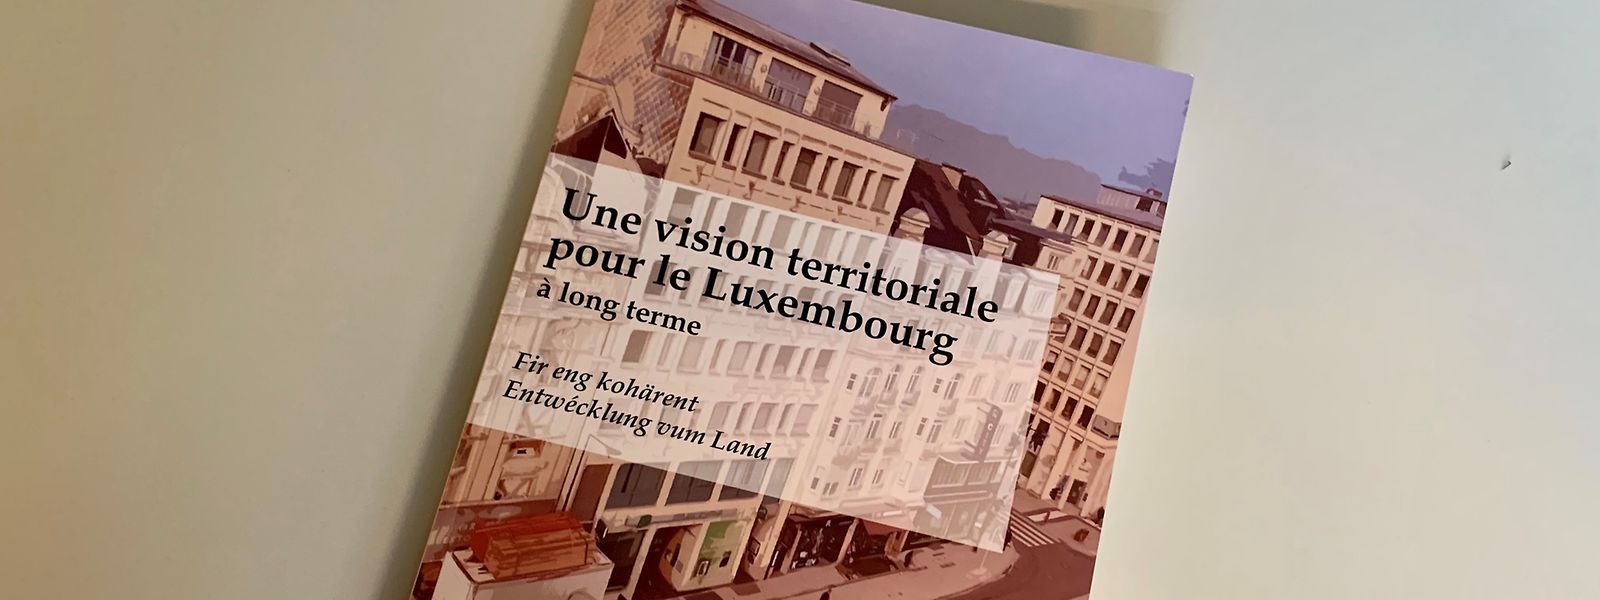 La présente étude propose de répondre à certaines questions comme: combien d’habitants, d’emplois et de frontaliers le Luxembourg pourrait-il compter en 2050 dans un scénario de développement «au fil de l’eau»?